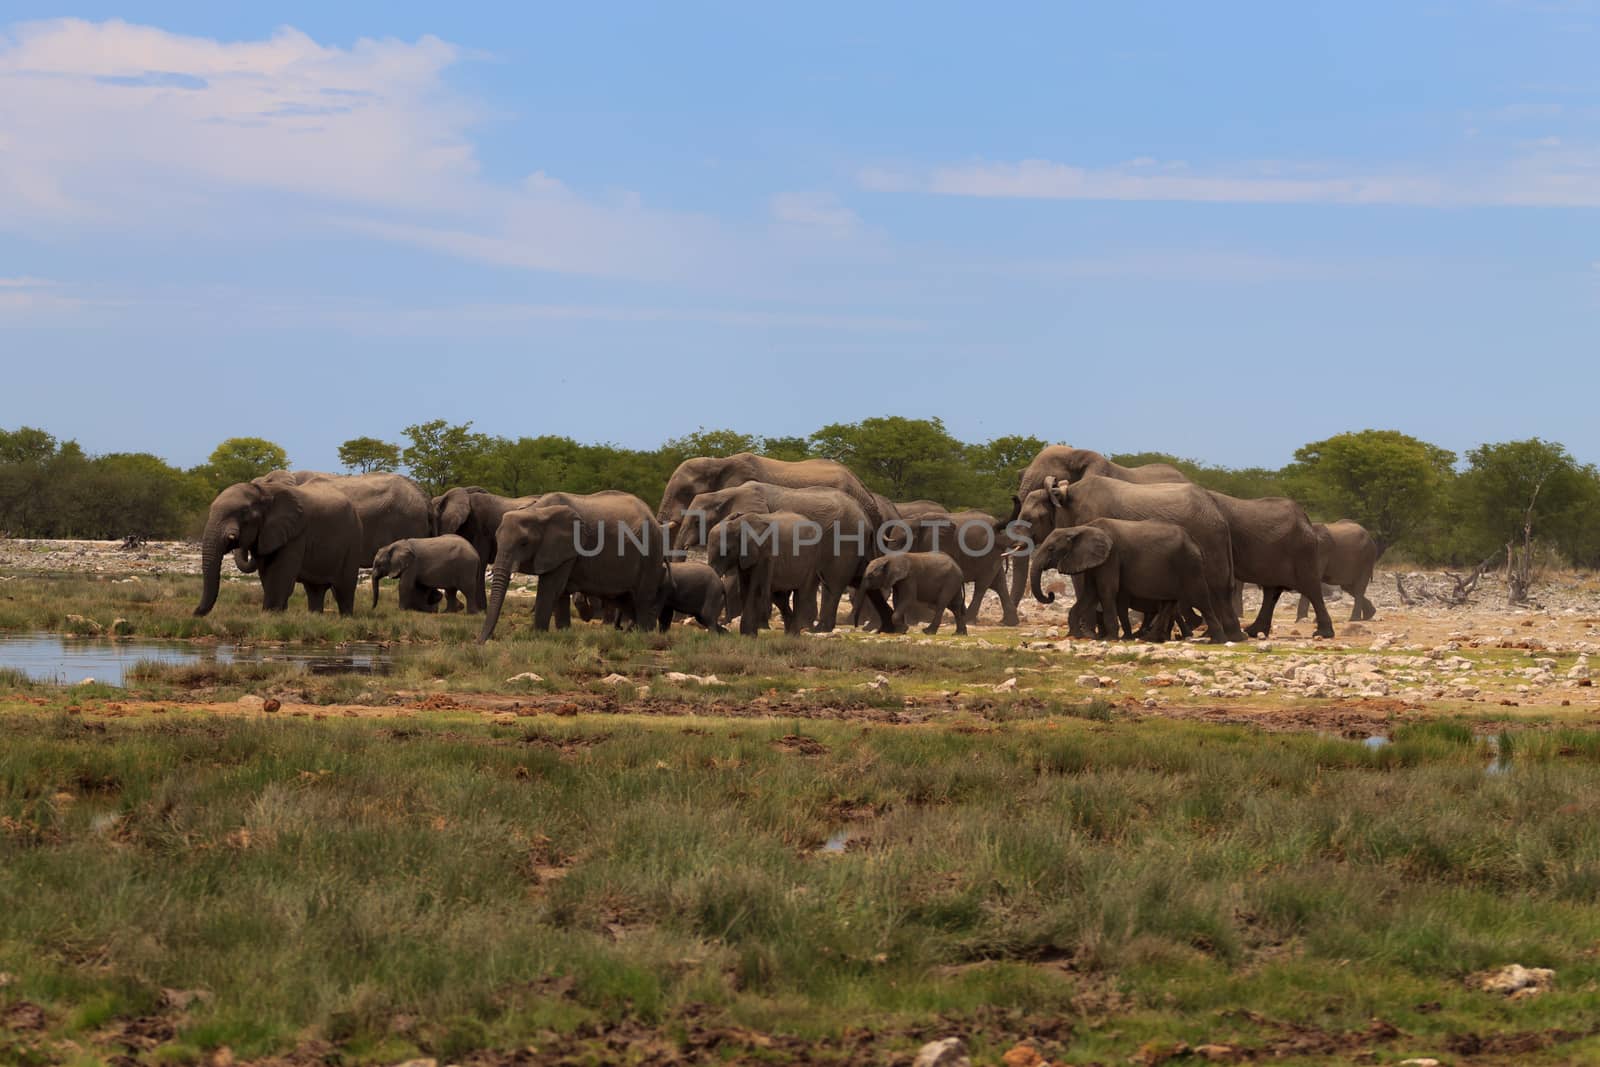 Herd of elephants from Etosha National Park, Namibia